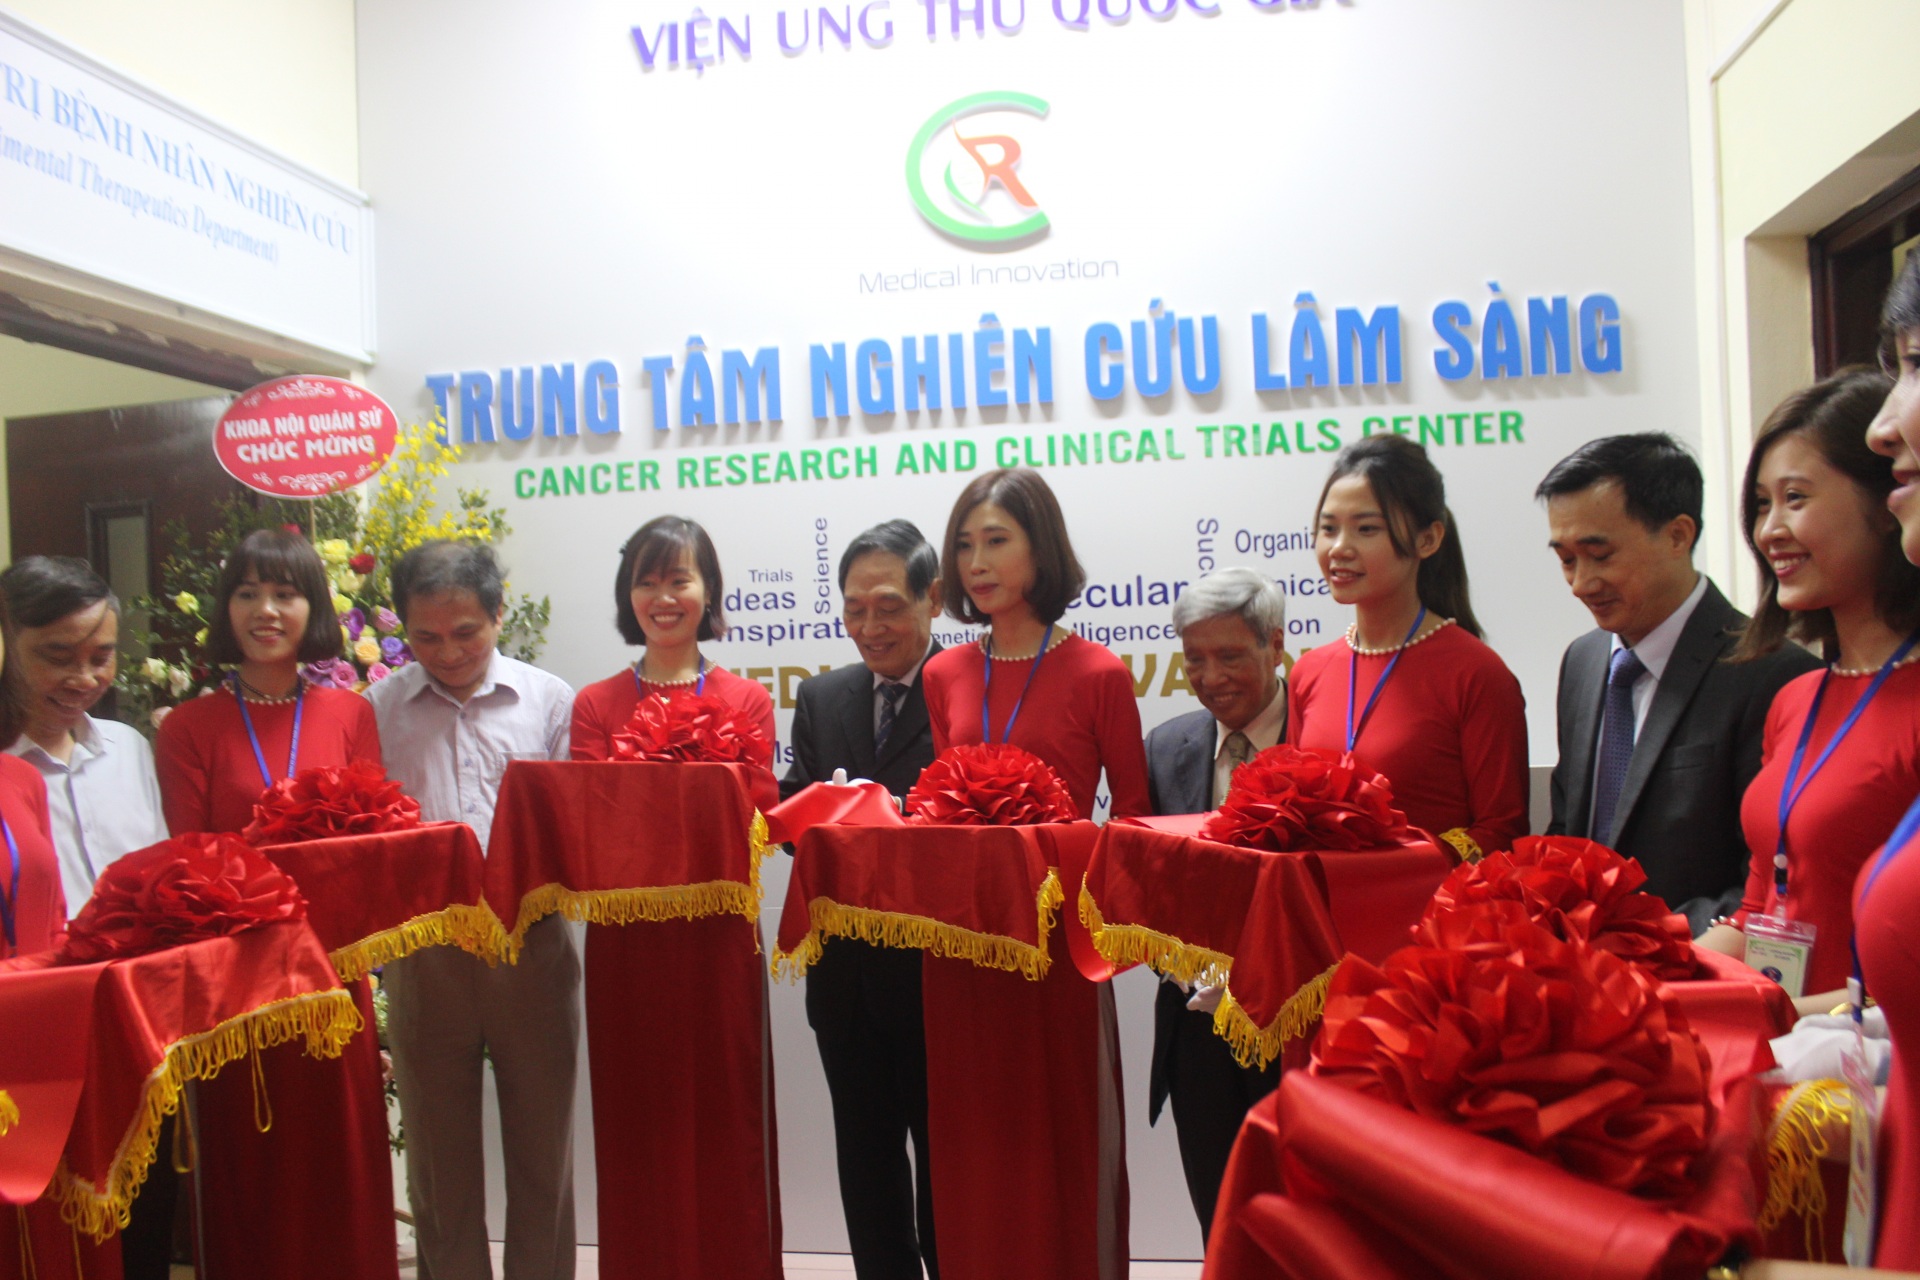 Trung tâm Nghiên cứu lâm sàng đầu tiên tại Việt Nam